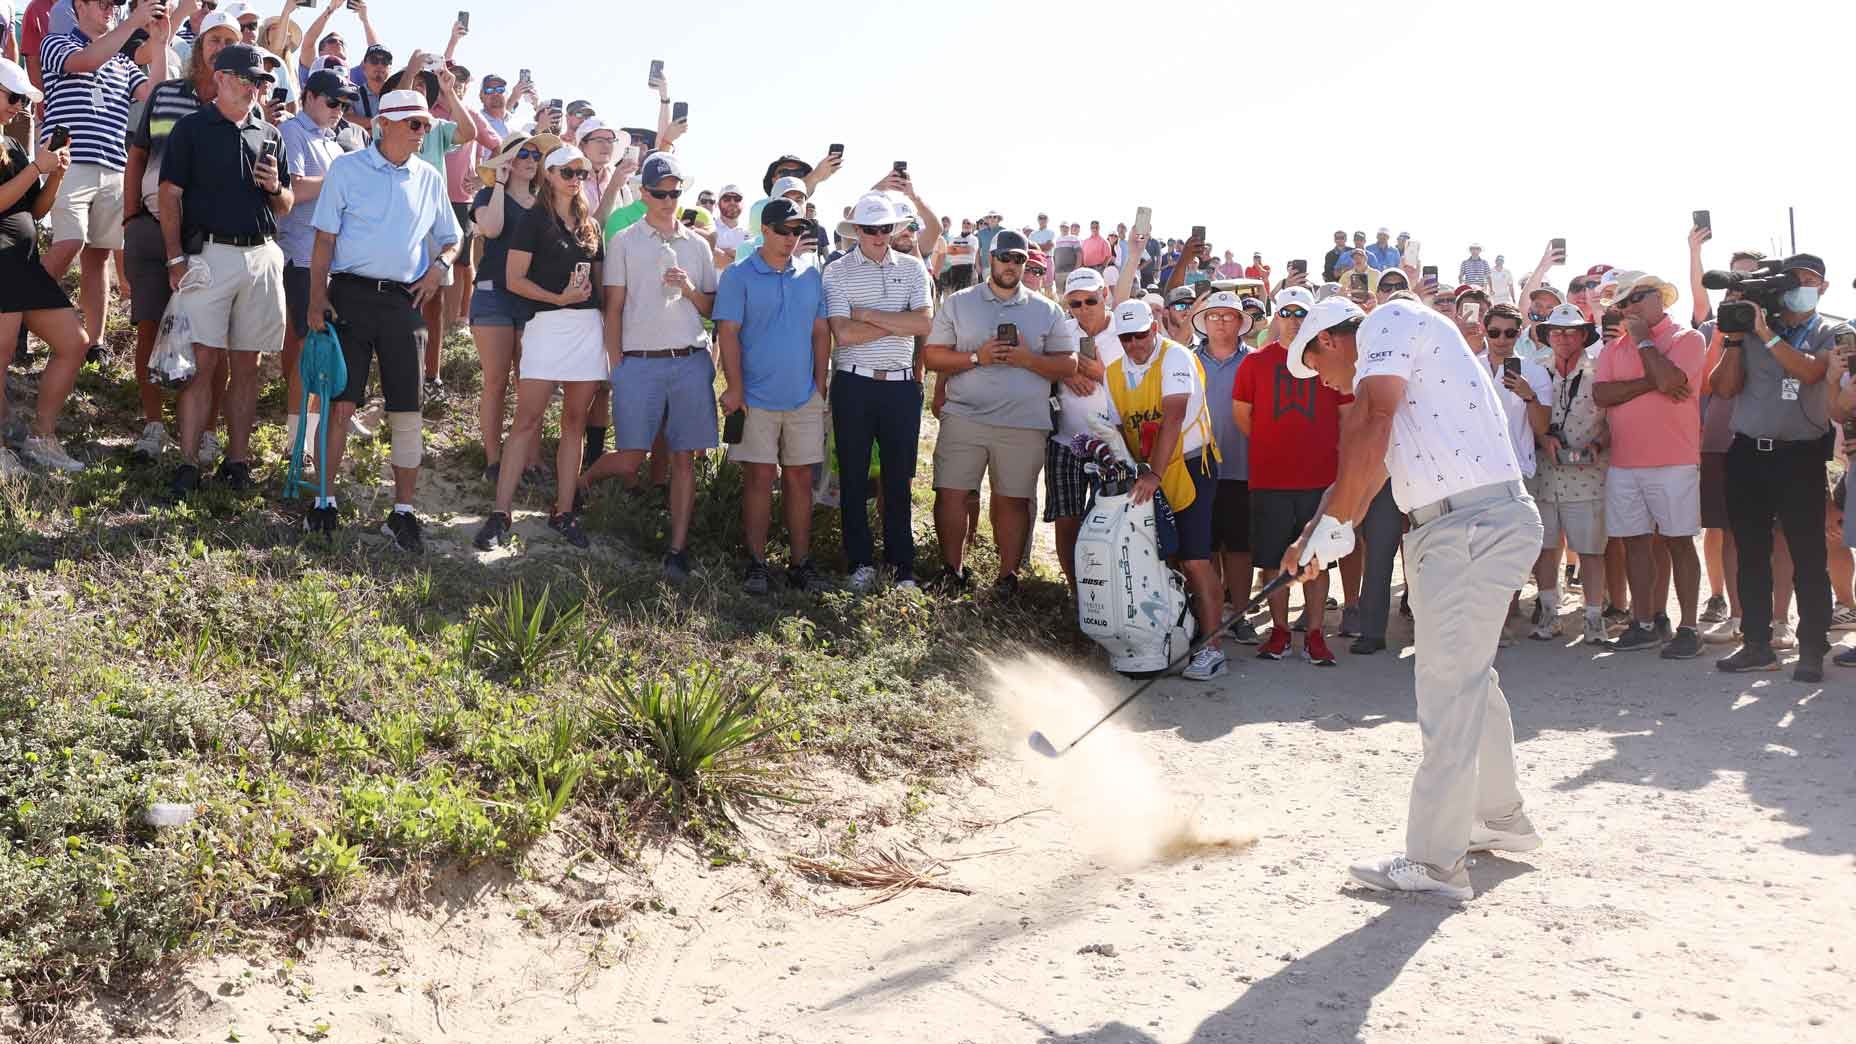 PGA Championship 2021: Tại sao các golfer được chạm gậy xuống cát trước cú đánh?